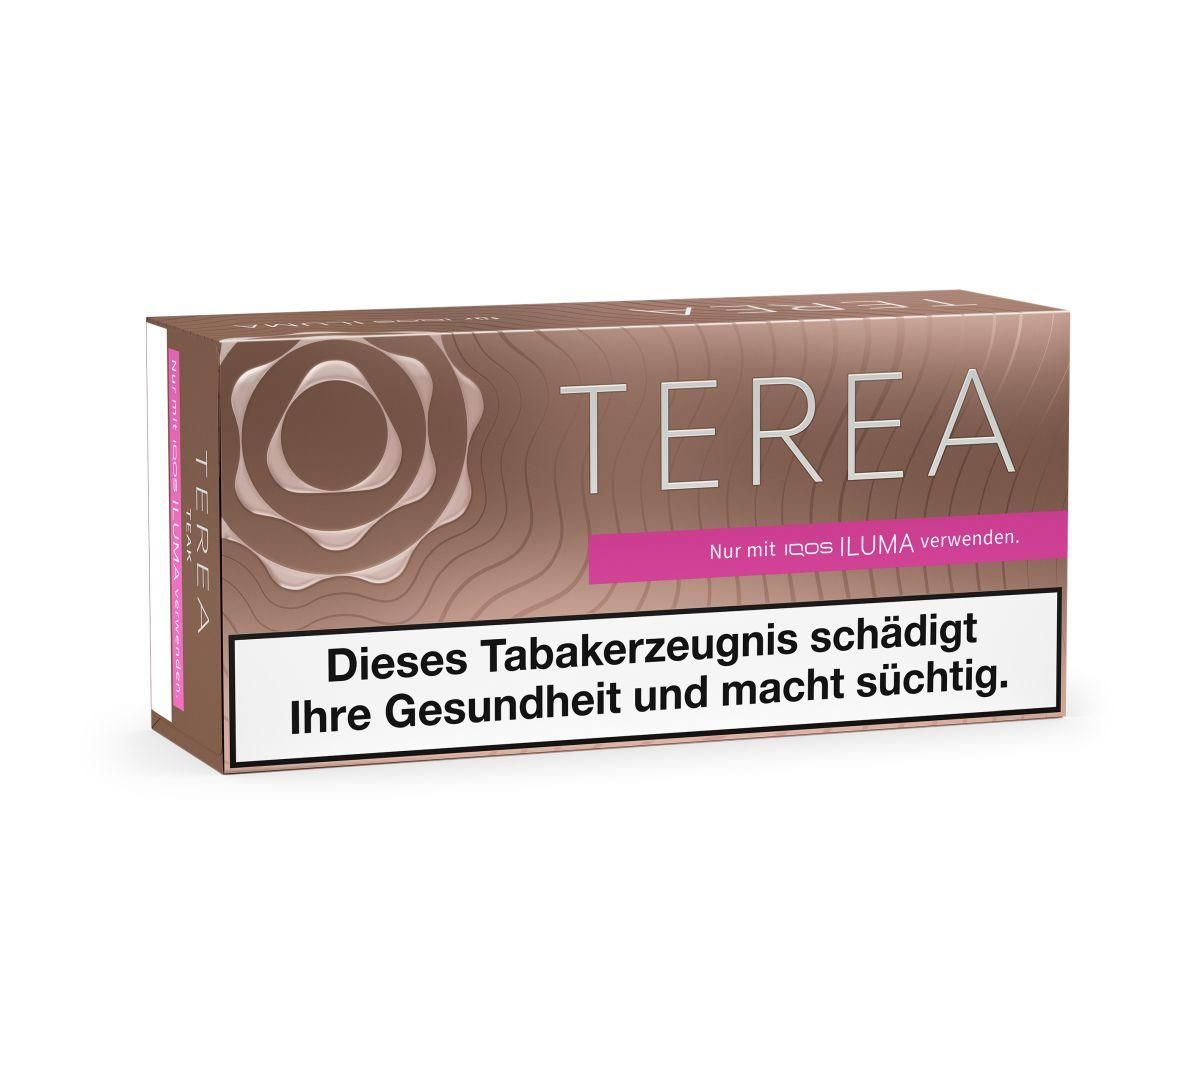 IQOS Terea - Teak Tabaksticks für IQOS ILUMA / ILUMA ONE (20 Stück)